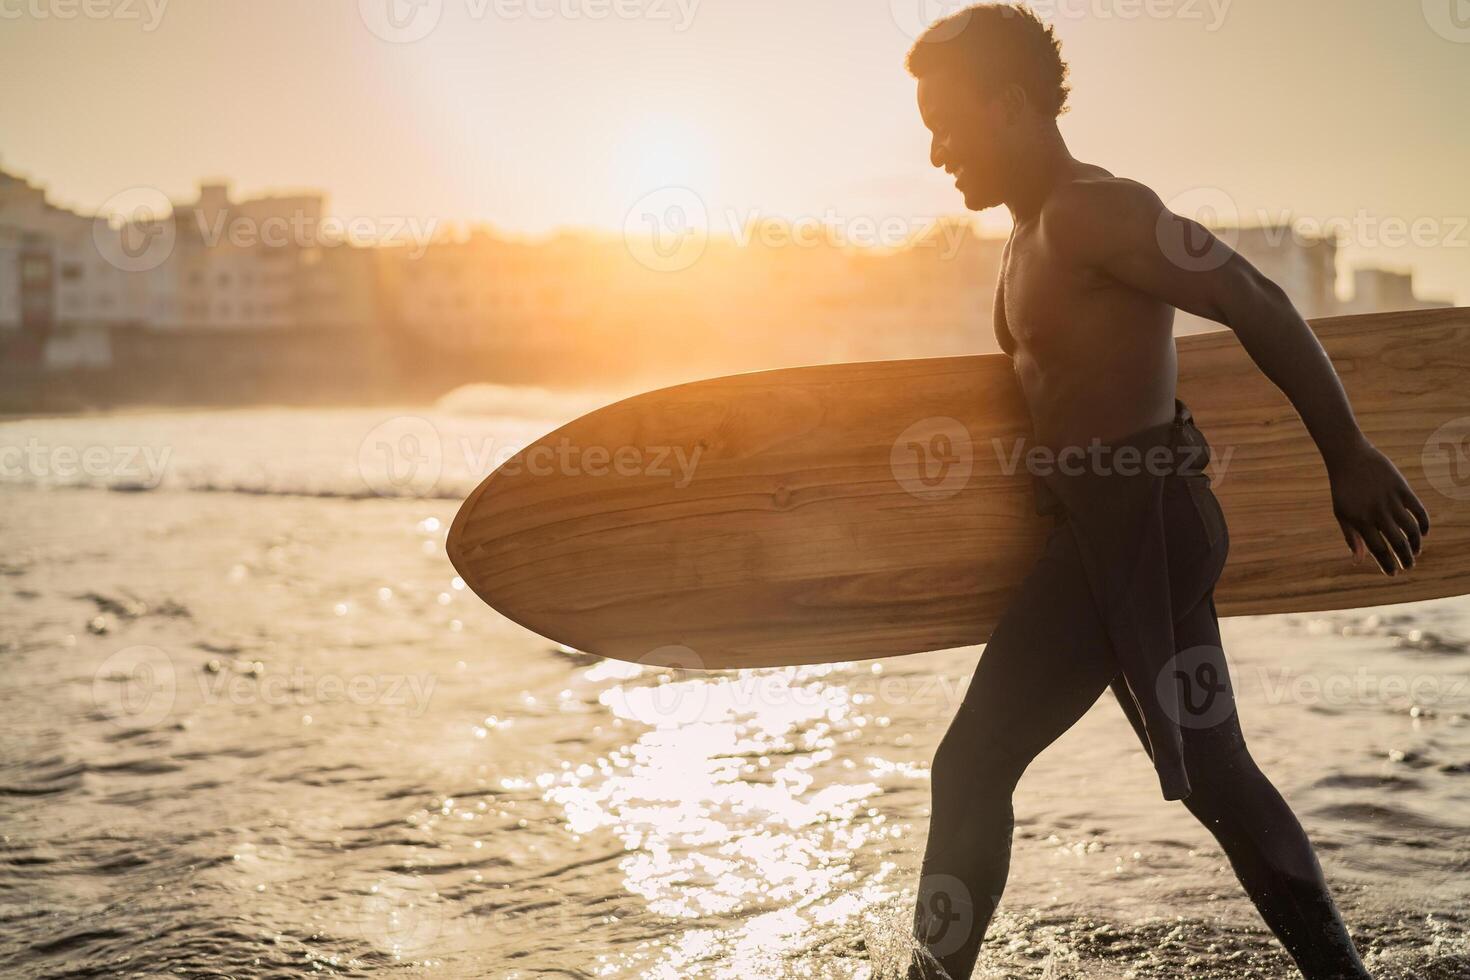 männlich afro Surfer haben Spaß Surfen während Sonnenuntergang Zeit - - afrikanisch Mann genießen Surfen Tag - - extrem Sport Lebensstil Menschen Konzept foto